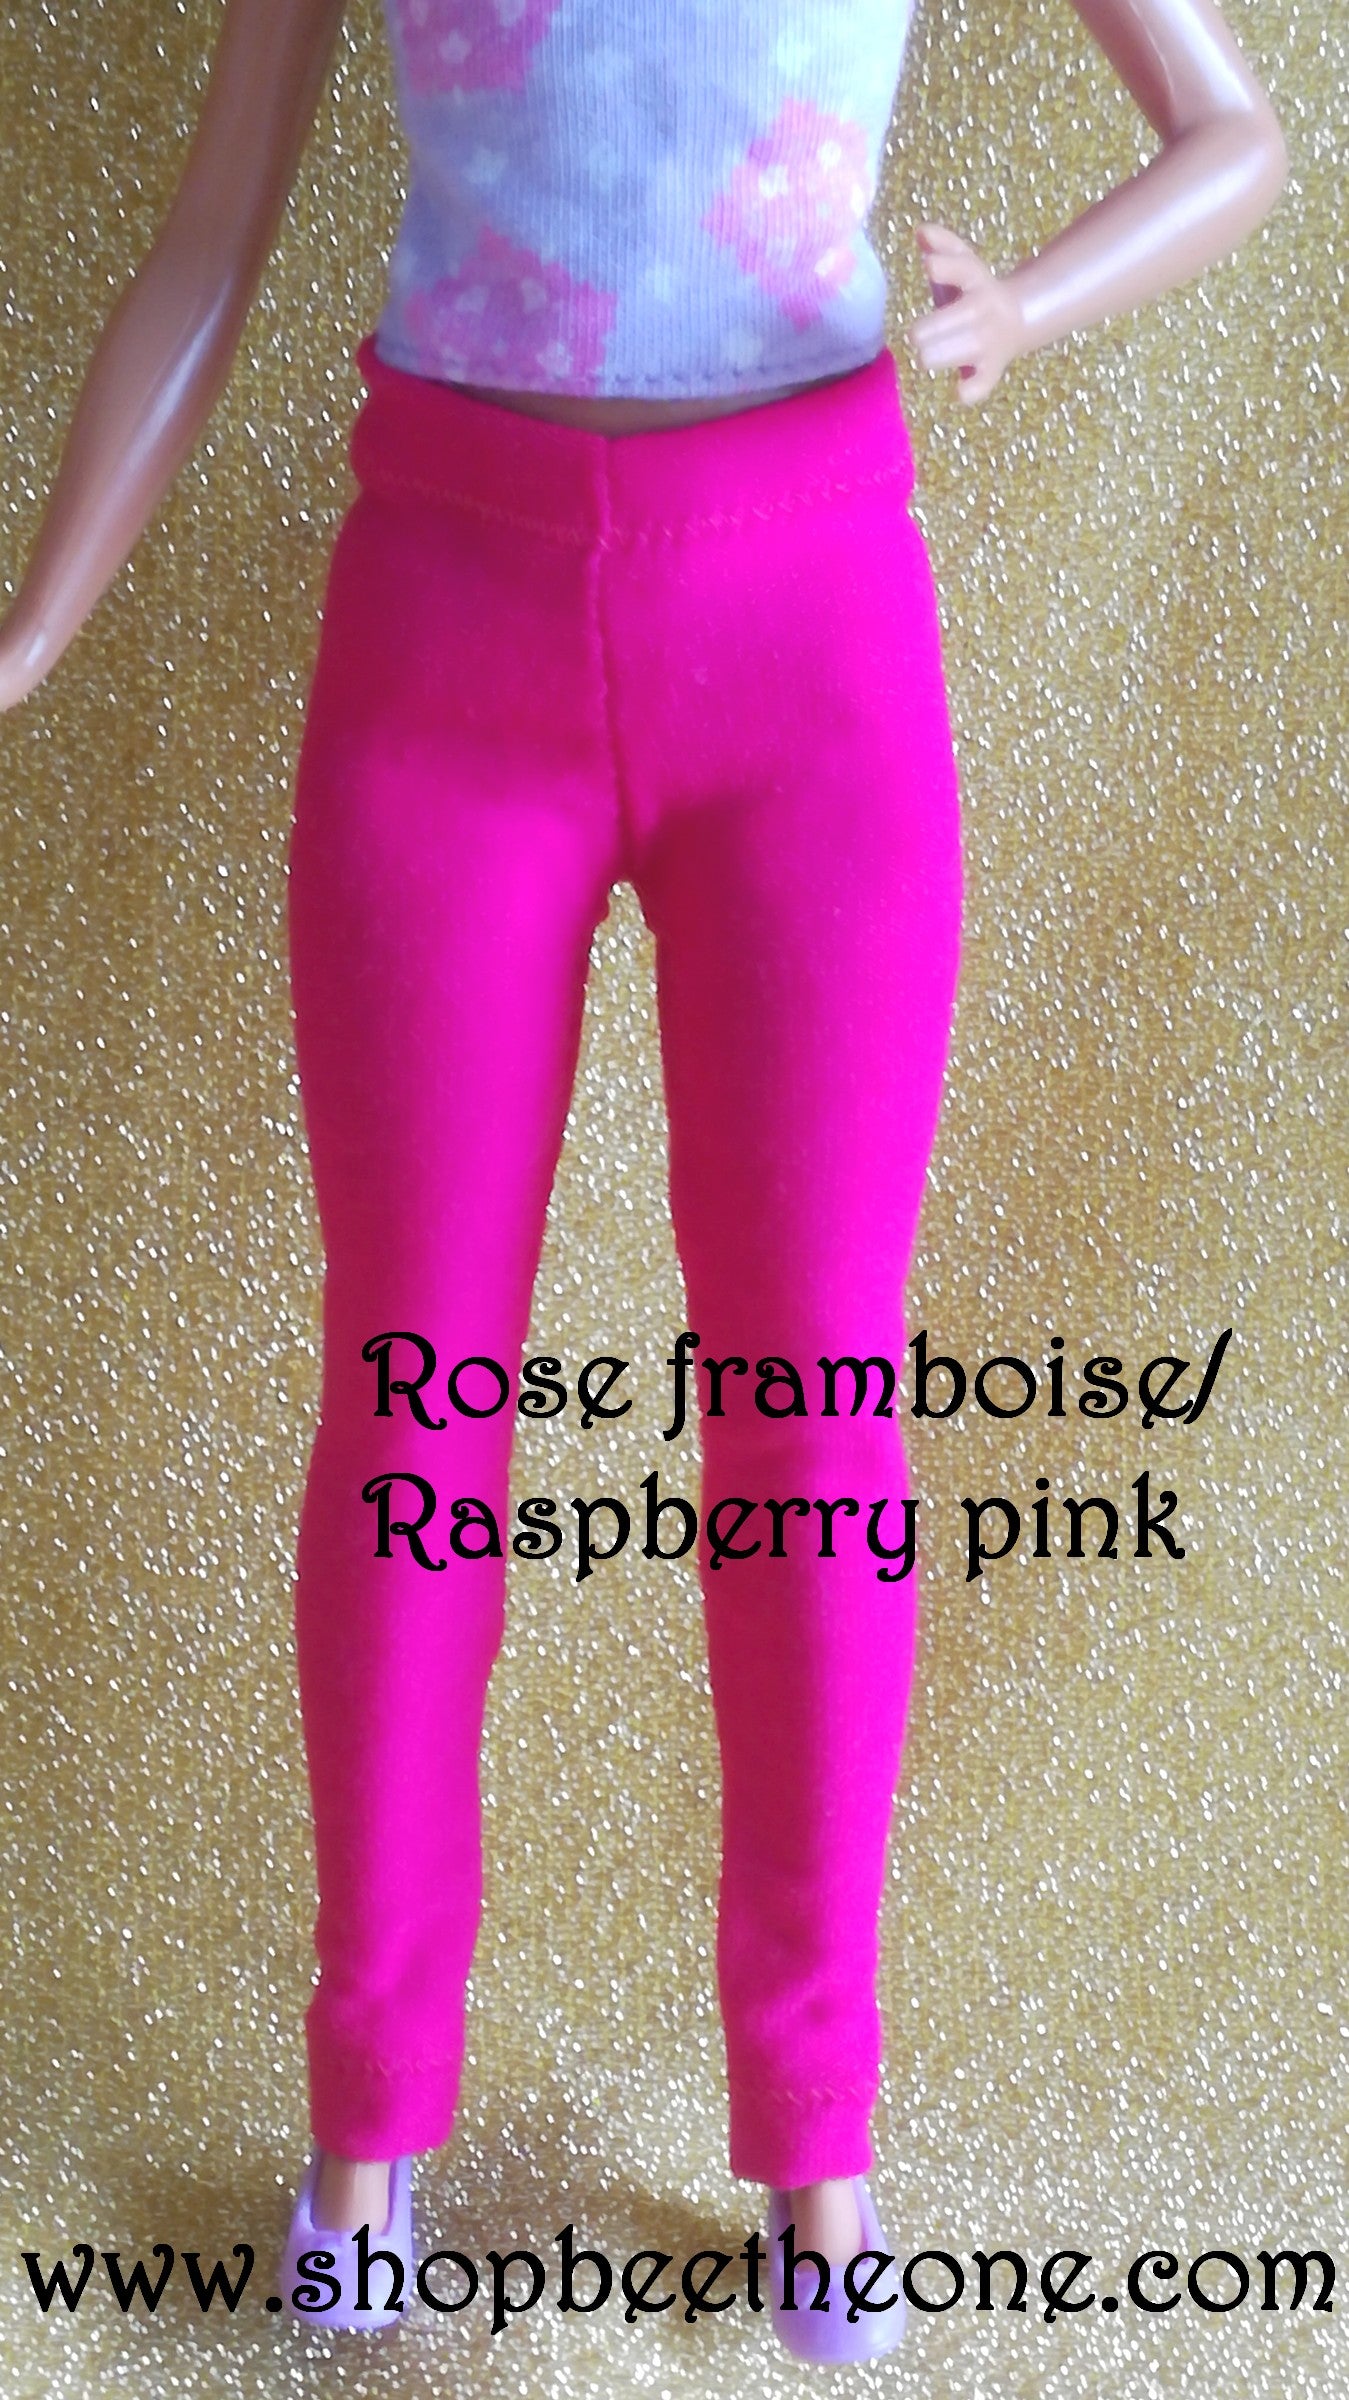 Pantalon collant leggings long pour poupées Barbie - 9 couleurs - 4 tailles - Collection Basics - par Bee the One